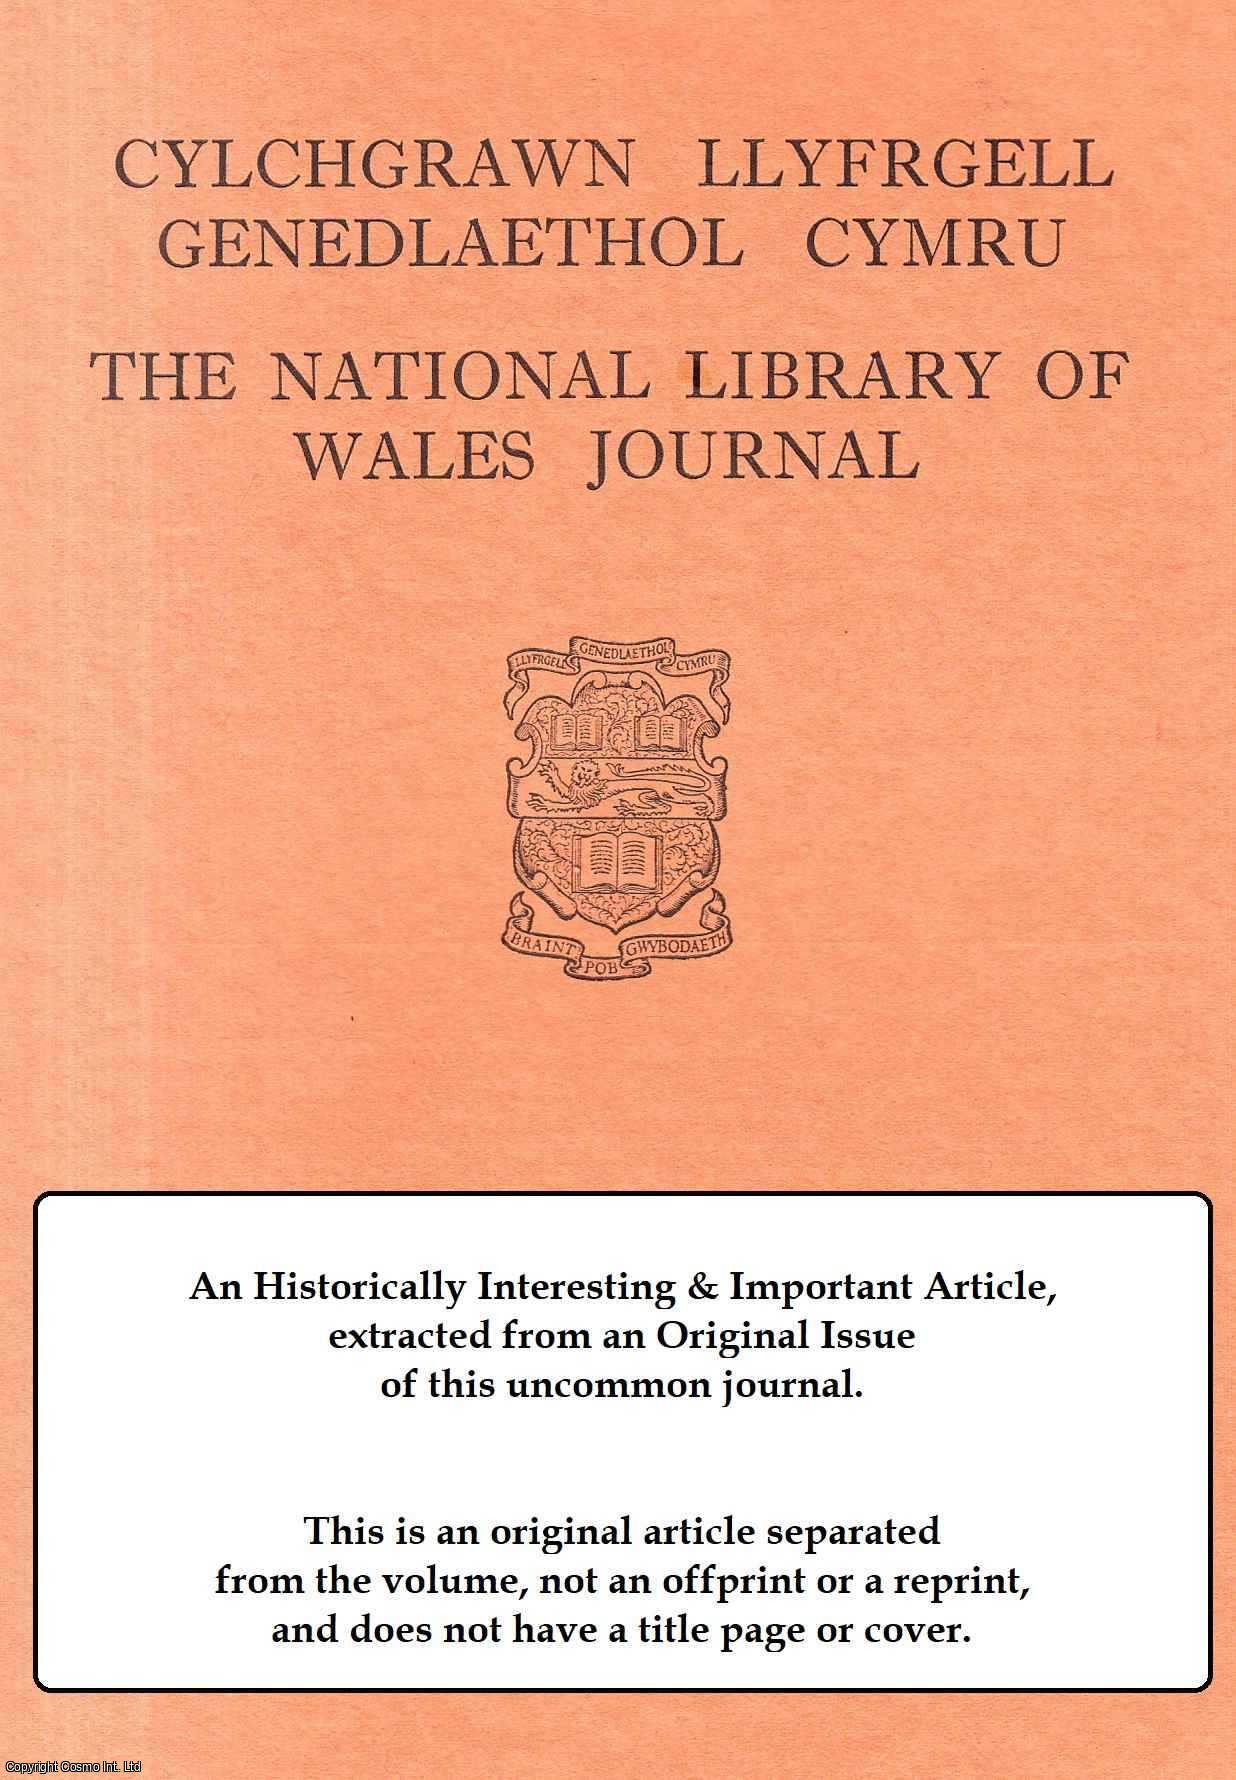 Emyr Wyn Jones - Addysg Feddygol I Ferched - Cyfraniadau O Gymru Agor Y Cyndyn Ddorau. An original article from The National Library of Wales Journal, 1976.